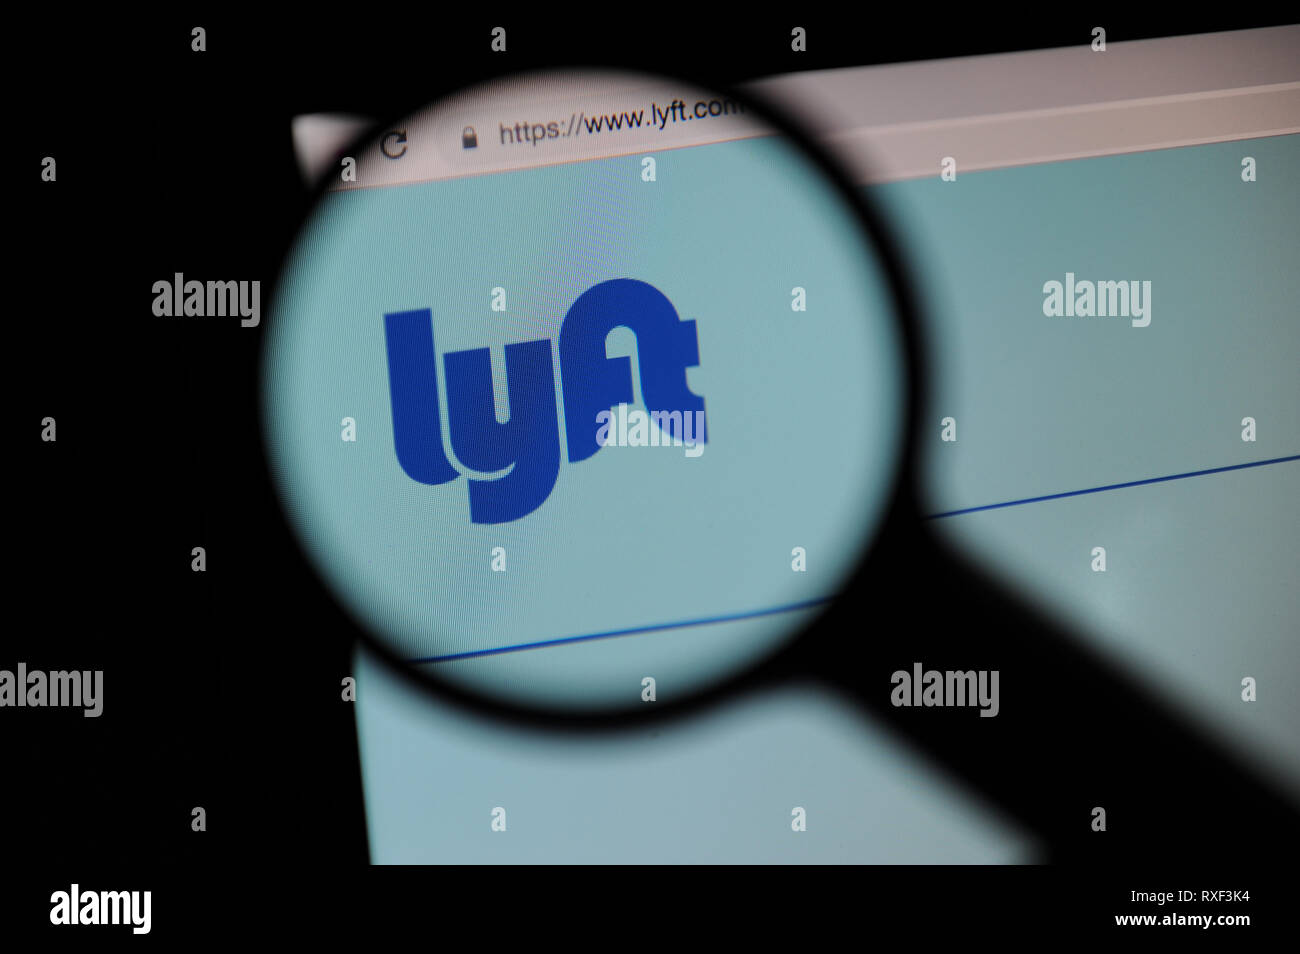 Sito web Lyft visto attraverso una lente di ingrandimento, Lyft è un autostop società con sede negli Stati Uniti. Foto Stock